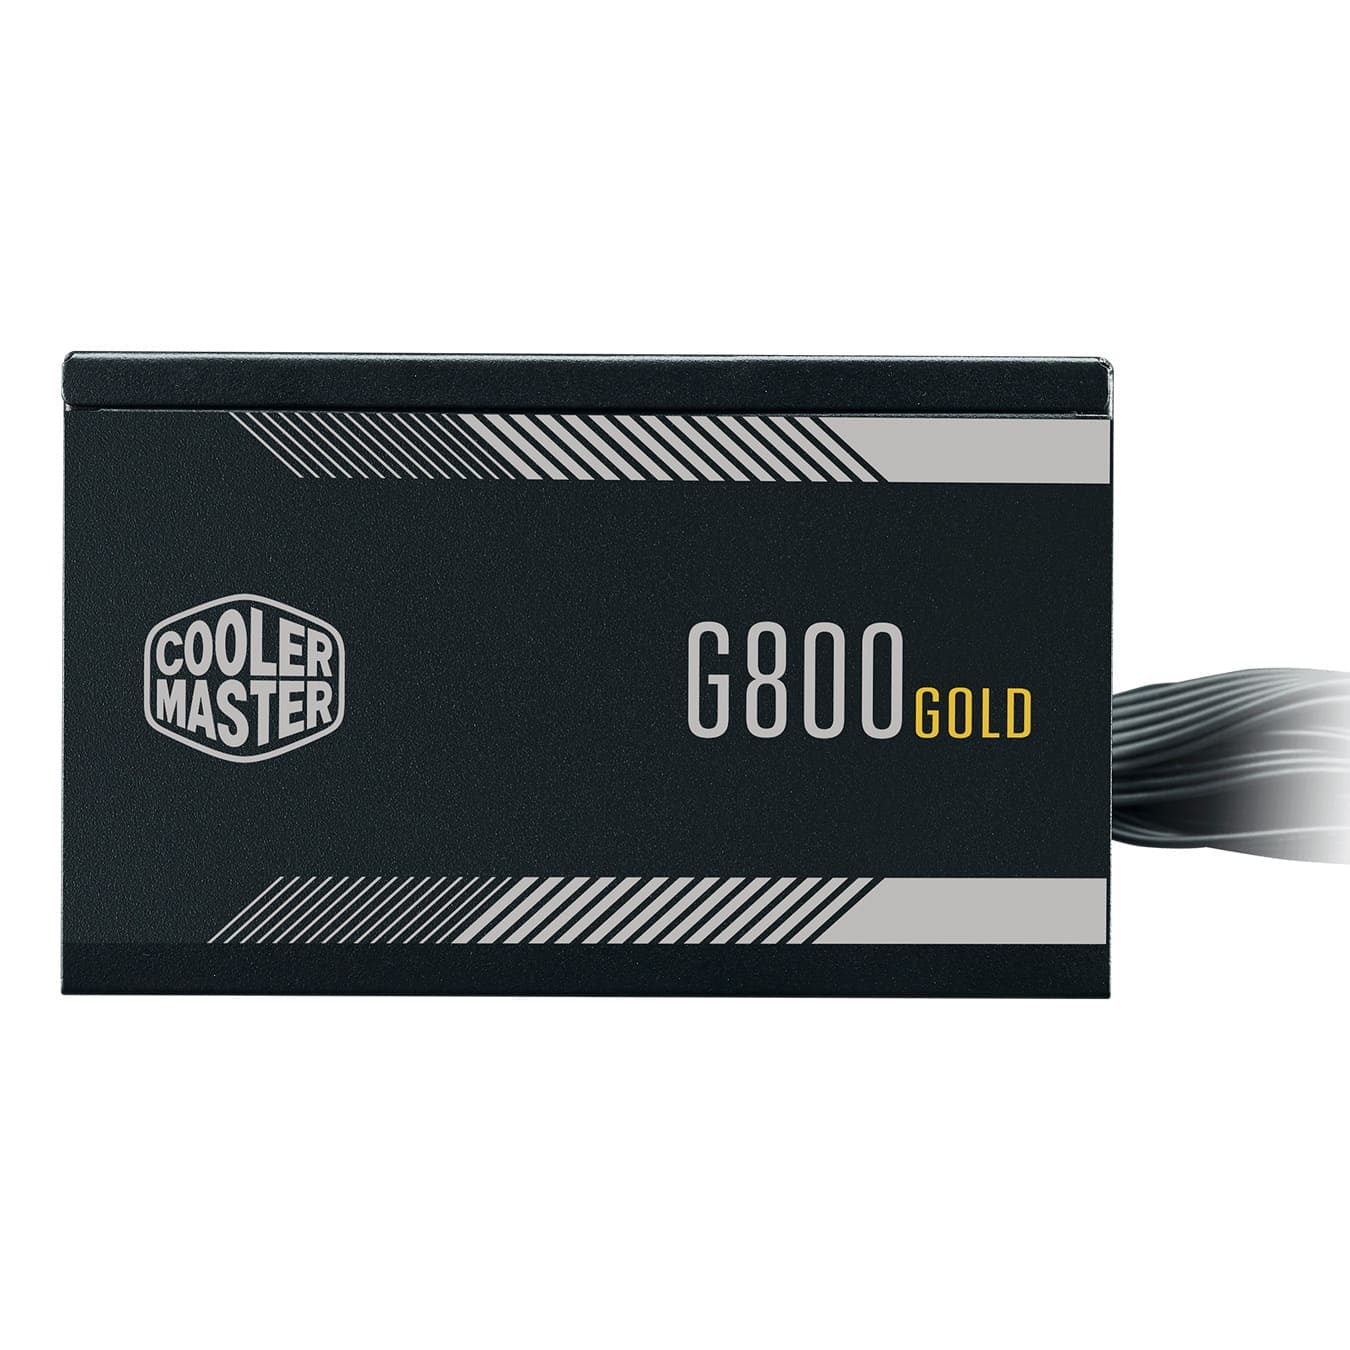 SMPS-COOLER-MASTER-G800-GOLD